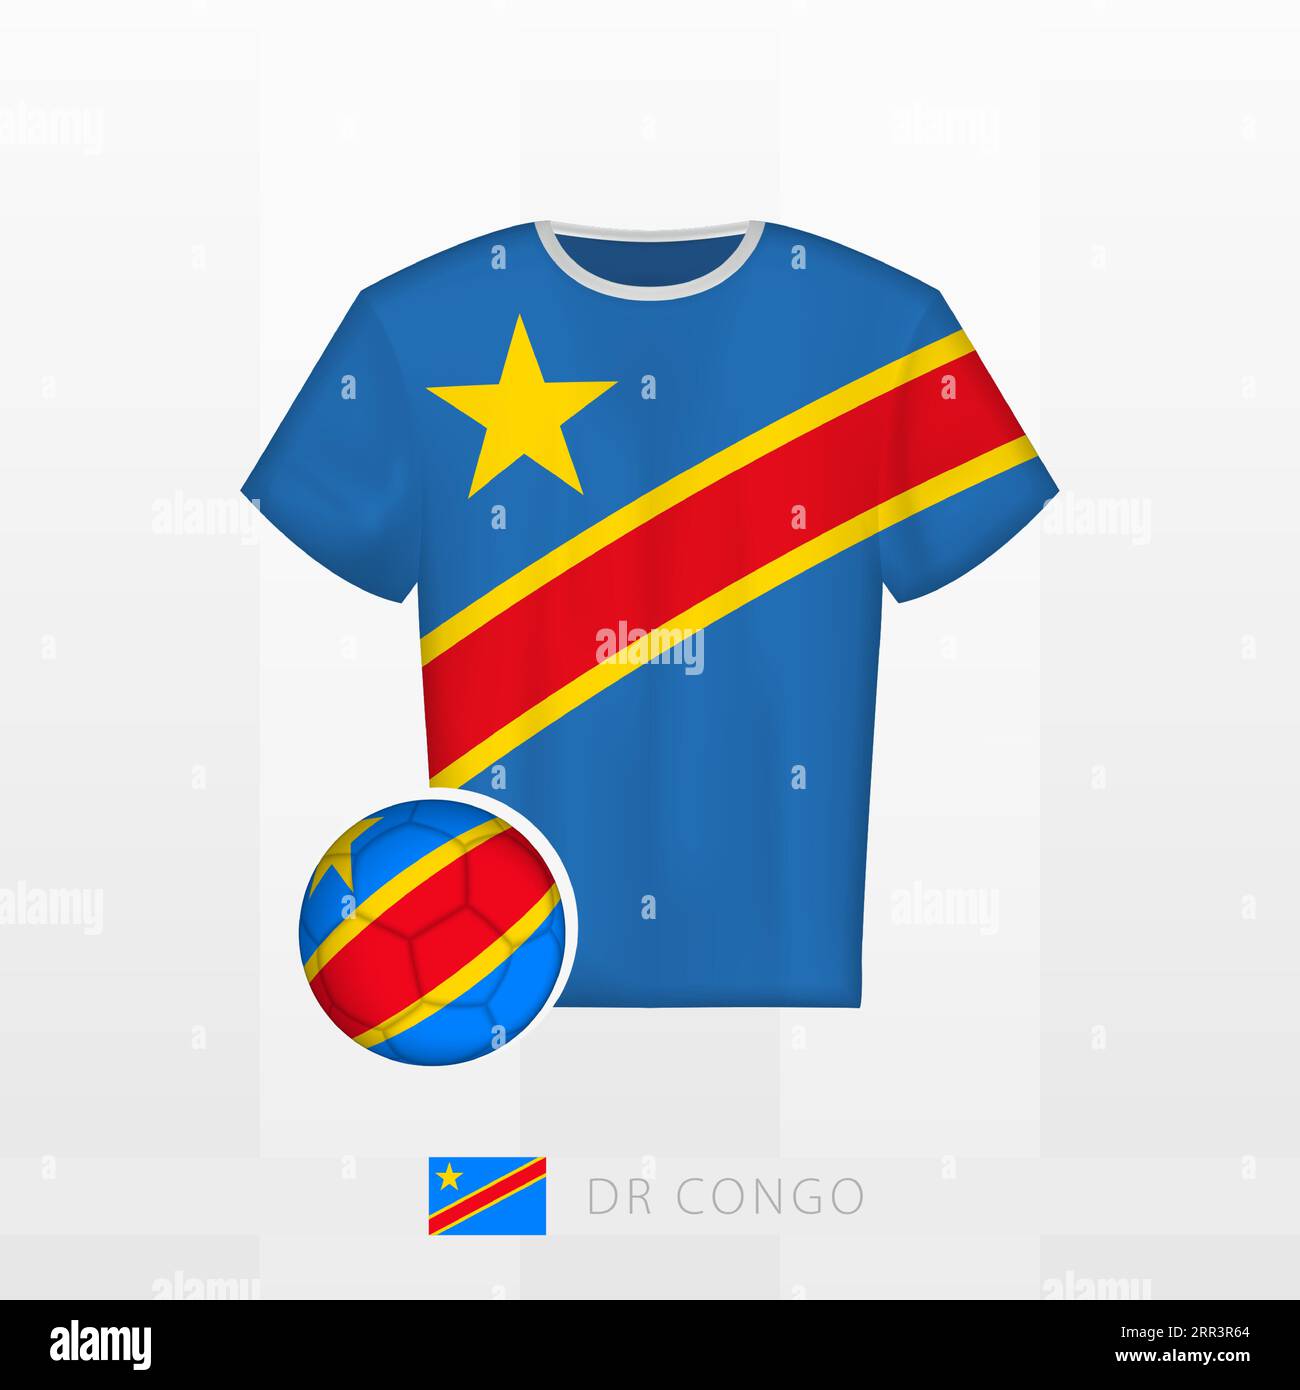 Uniforme de football de l'équipe nationale de la RD Congo avec ballon de football avec drapeau de la RD Congo. Maillot de football et ballon de soccerball avec drapeau. Modèle vectoriel. Illustration de Vecteur